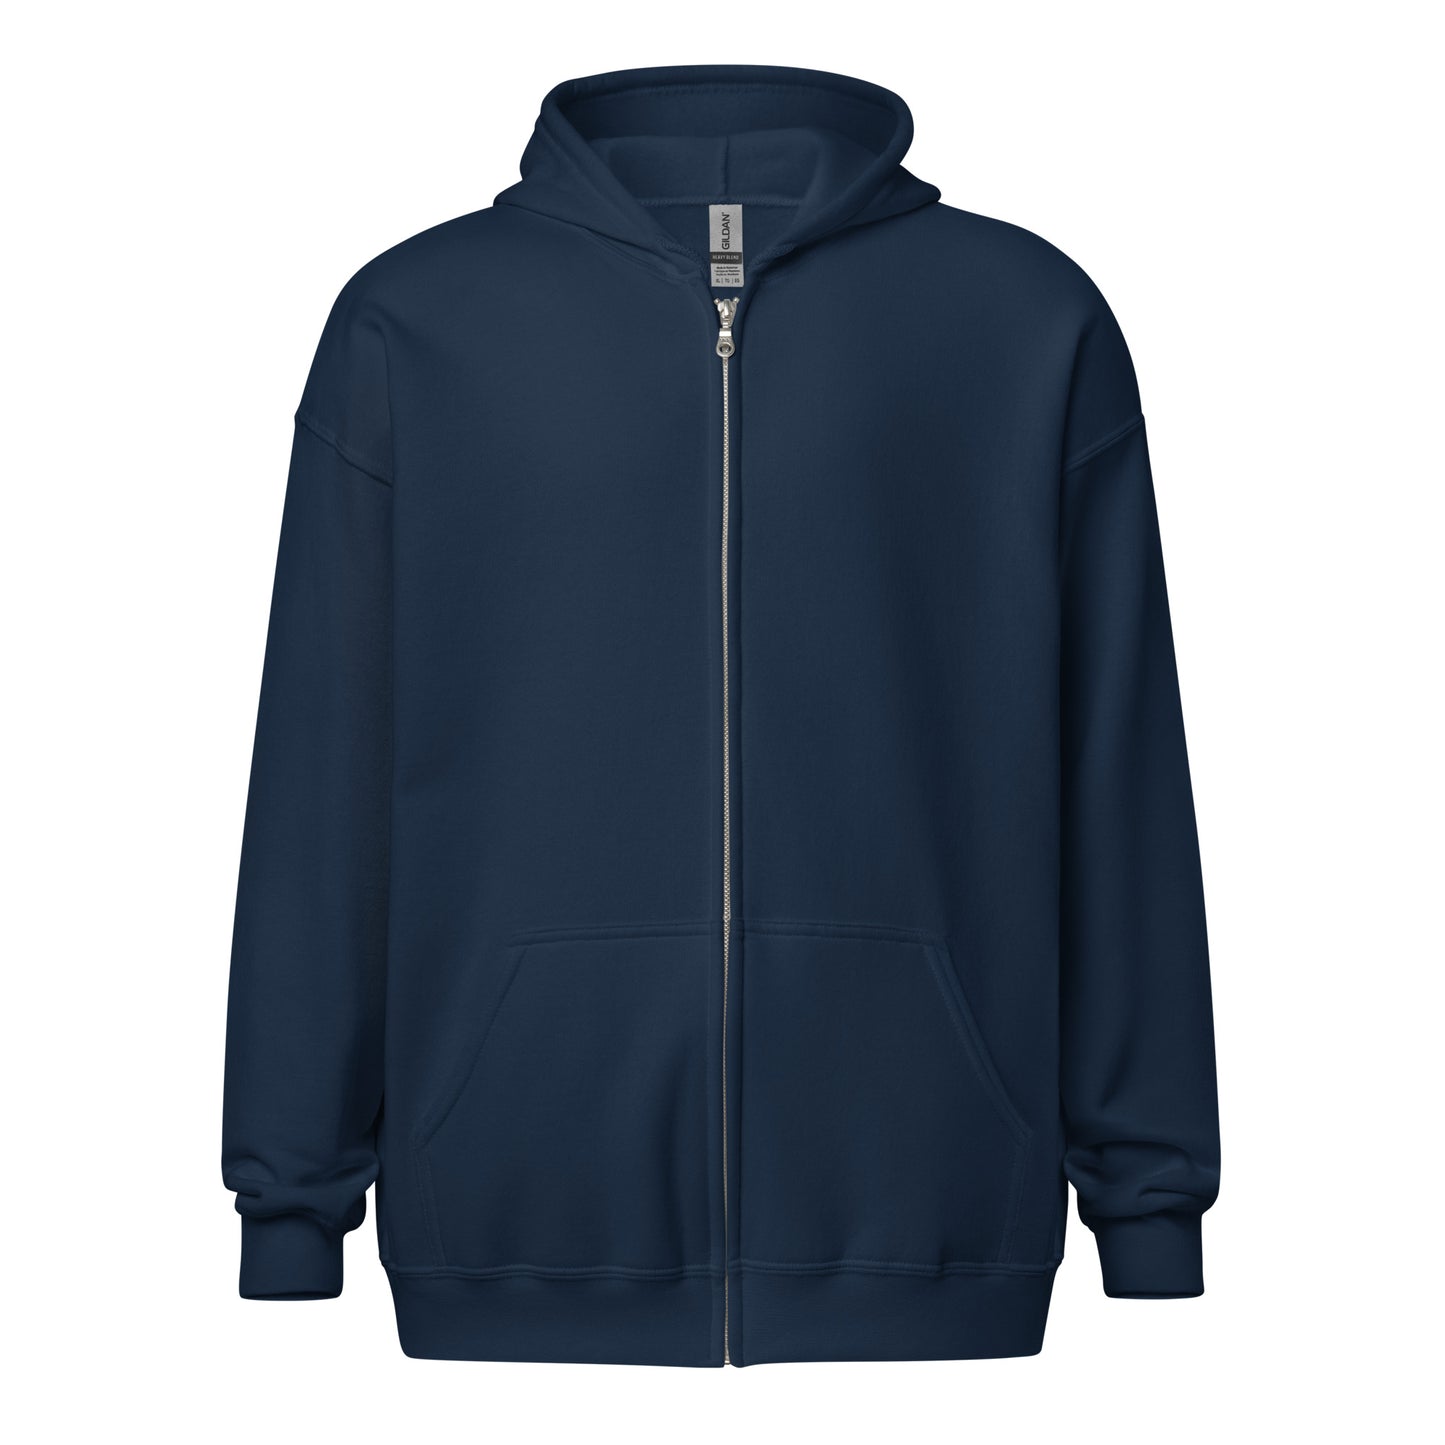 Unisex heavy blend zip hoodie- Read